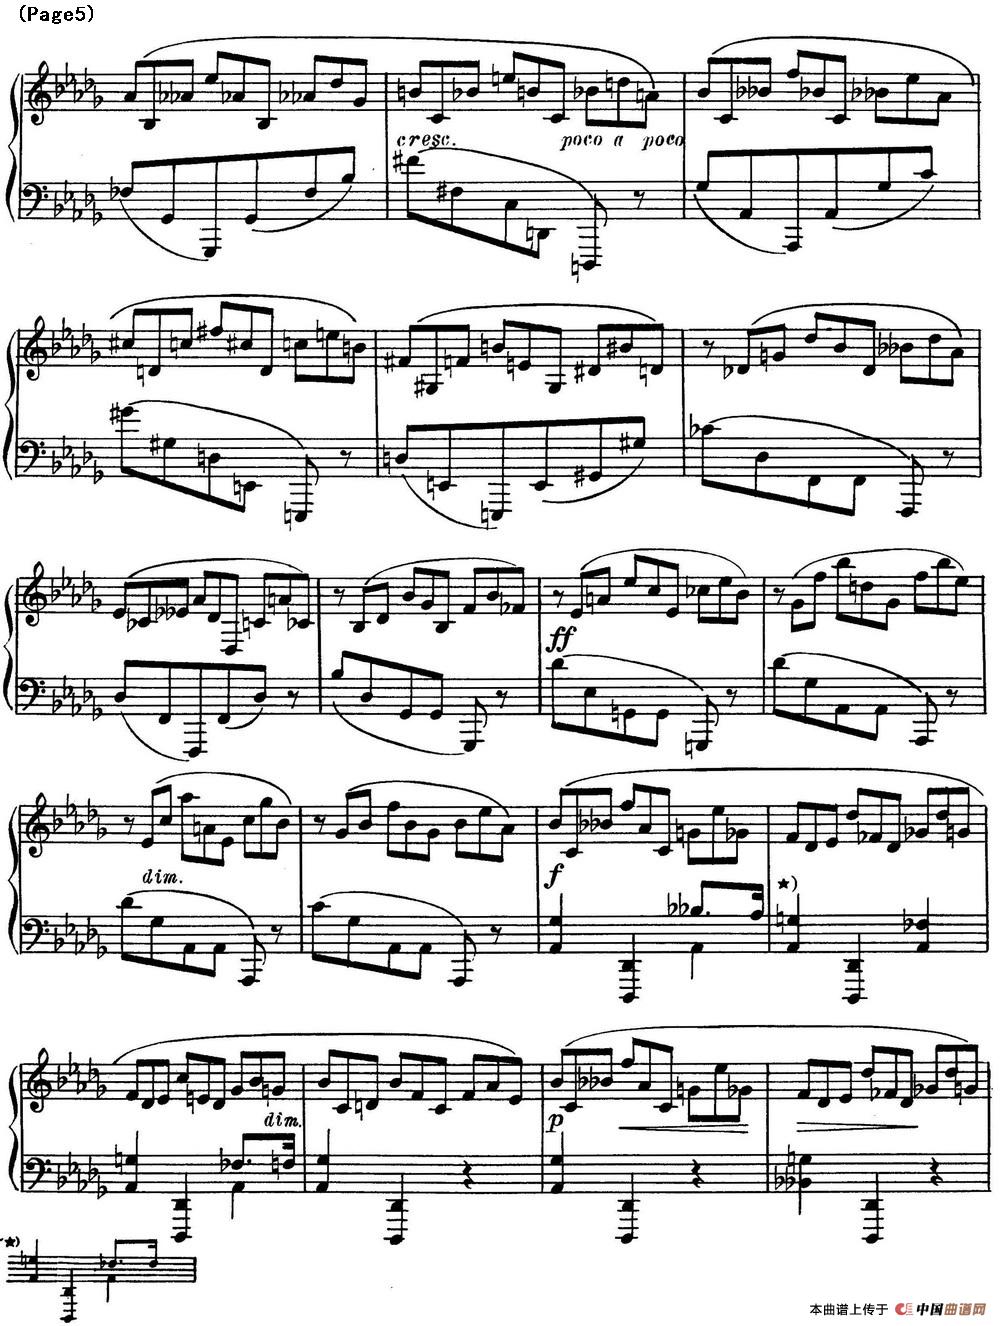 斯克里亚宾8首钢琴练习曲 Op42（No.1 Alexander Scriabin Etudes）(1)_Scriabin Etude Op.42 No.1_页面_5.jpg